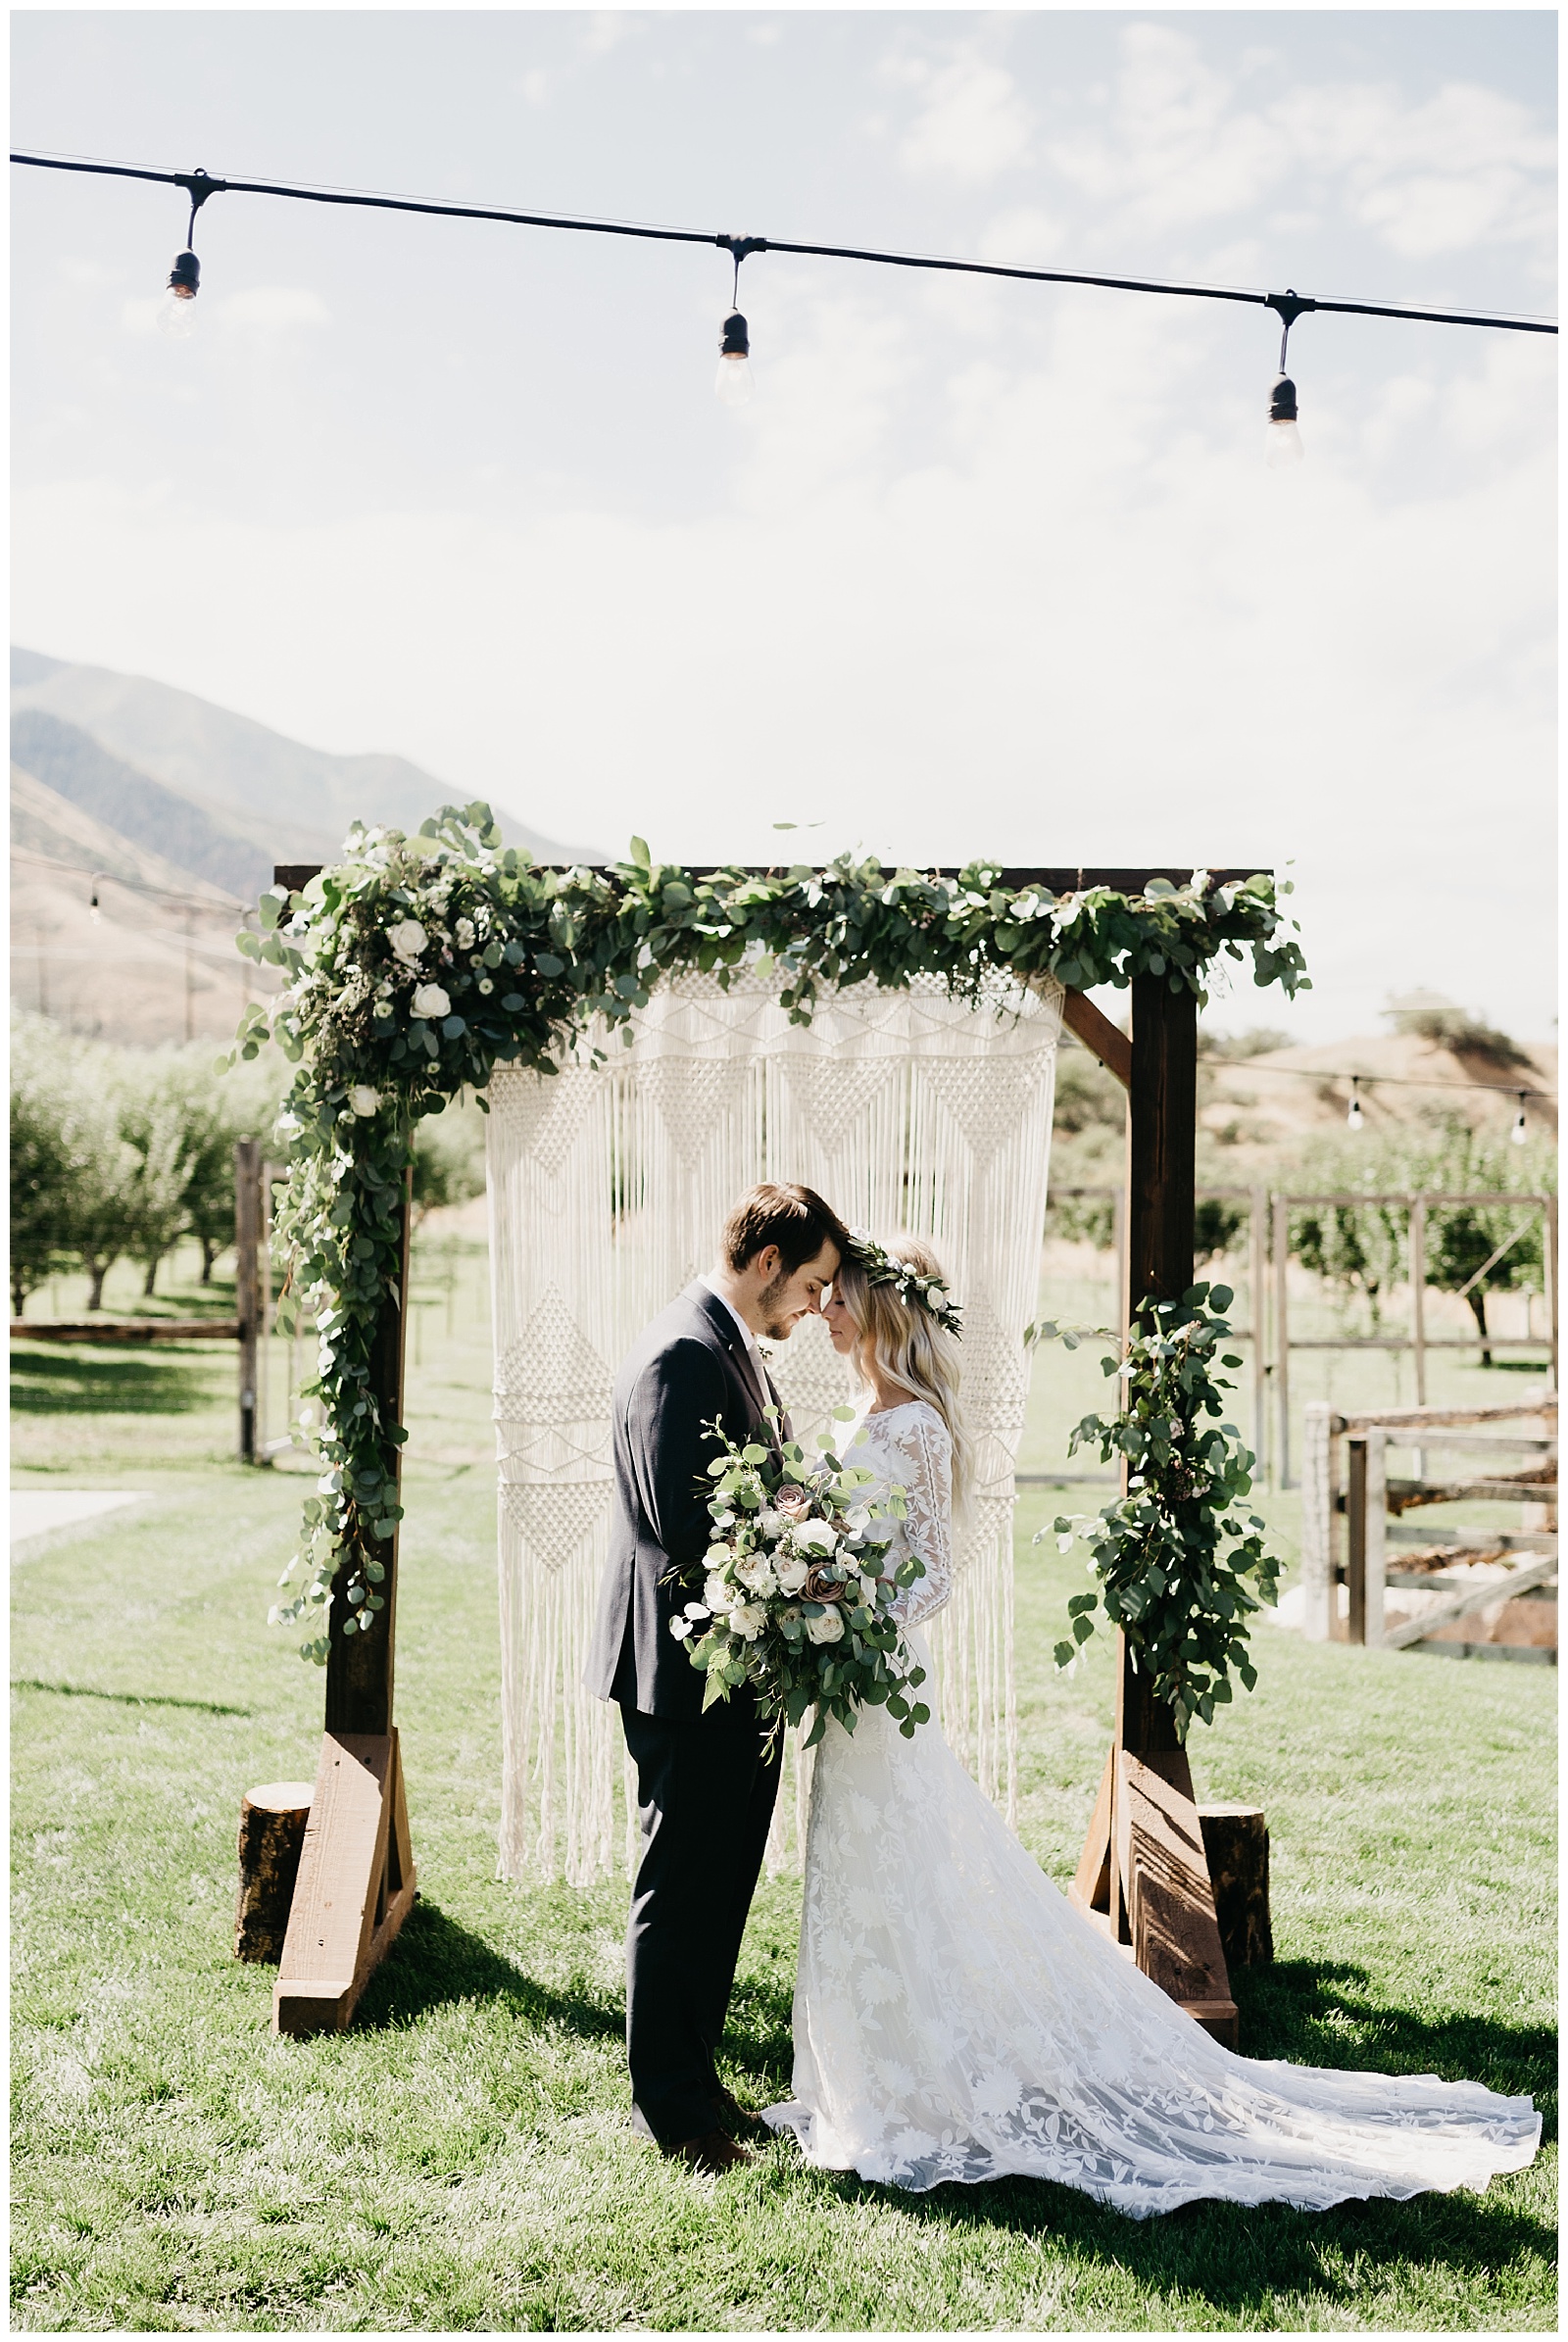 Elise and Kade, Boho Backyard Utah Wedding | Nicole Aston Photo